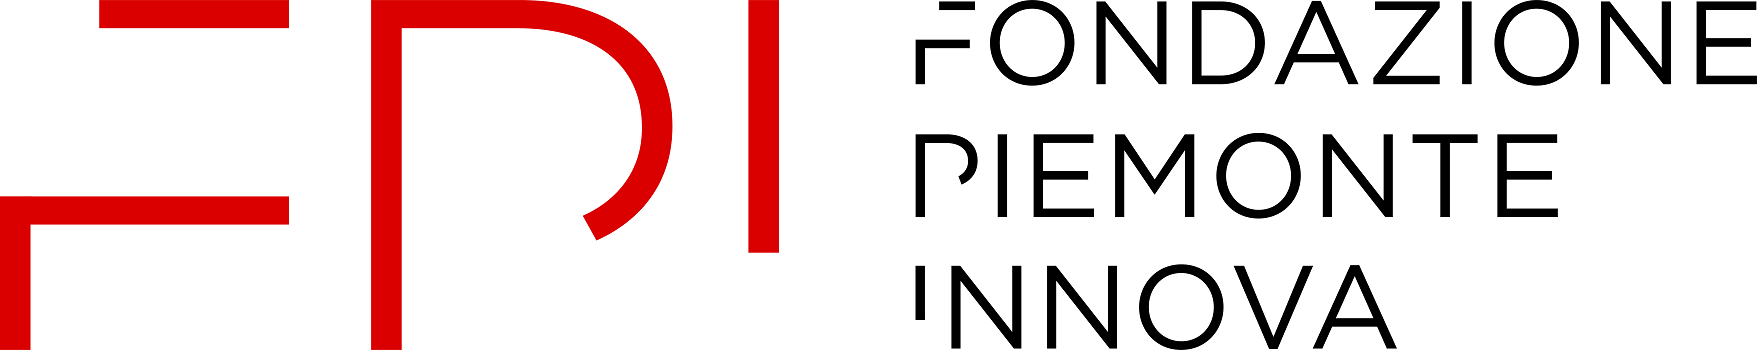 Fondazione Piemonte Innova